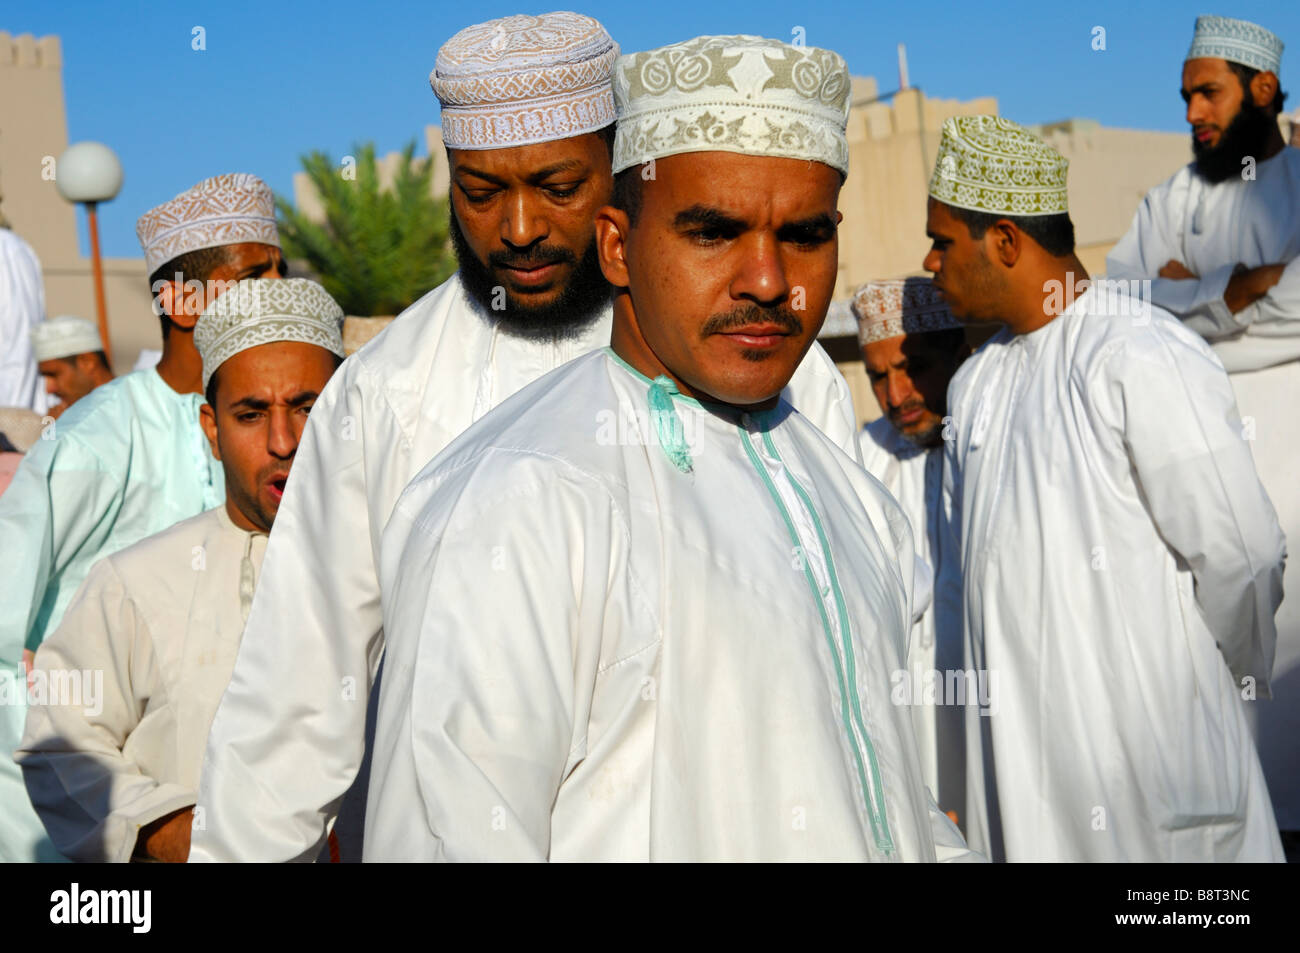 Les hommes dans l'Omanais costume national Dishdasha et le kummah cap sur la tête, Nizwa, Sultanat d'Oman Banque D'Images